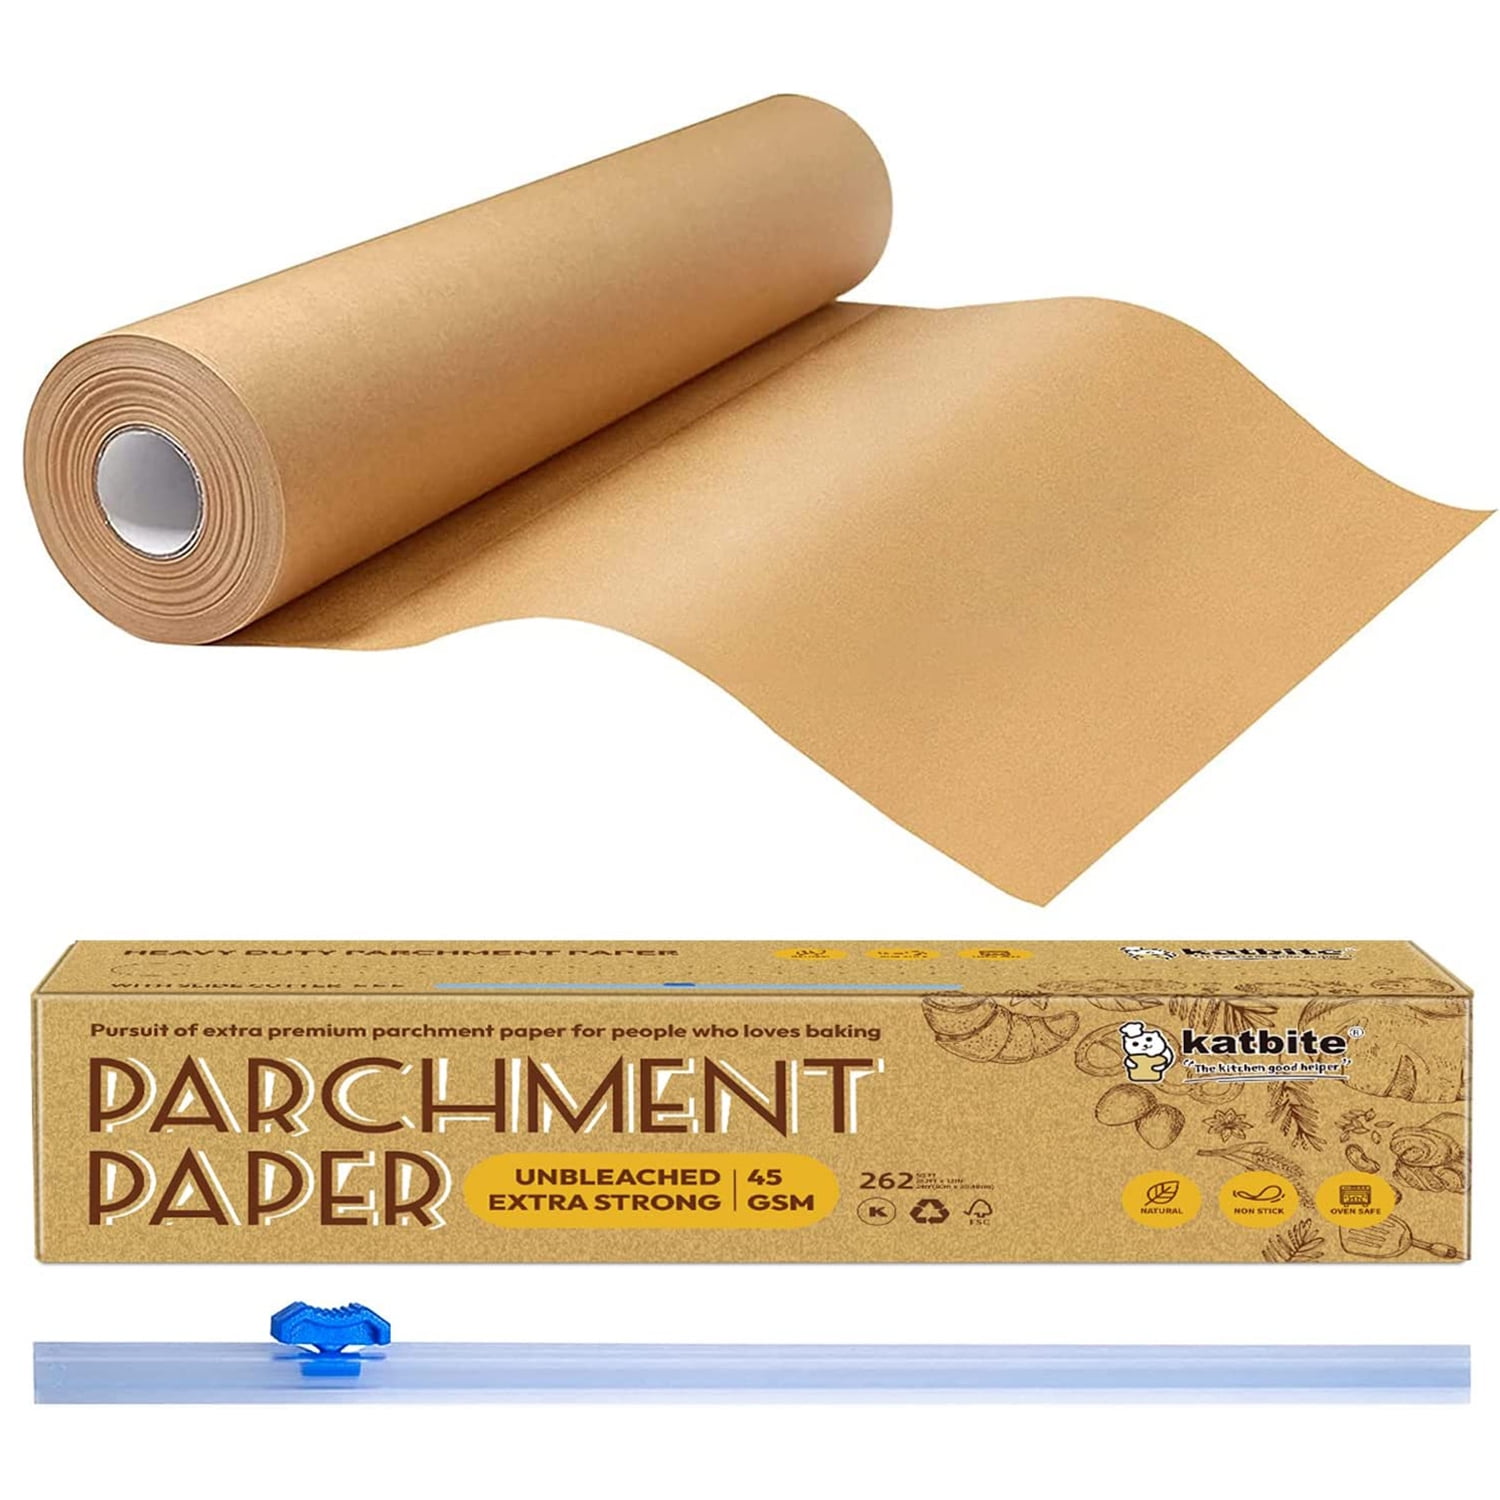 Baker's Secret Paper Microwave Safe Unbleached Parchment Paper Sheets 9